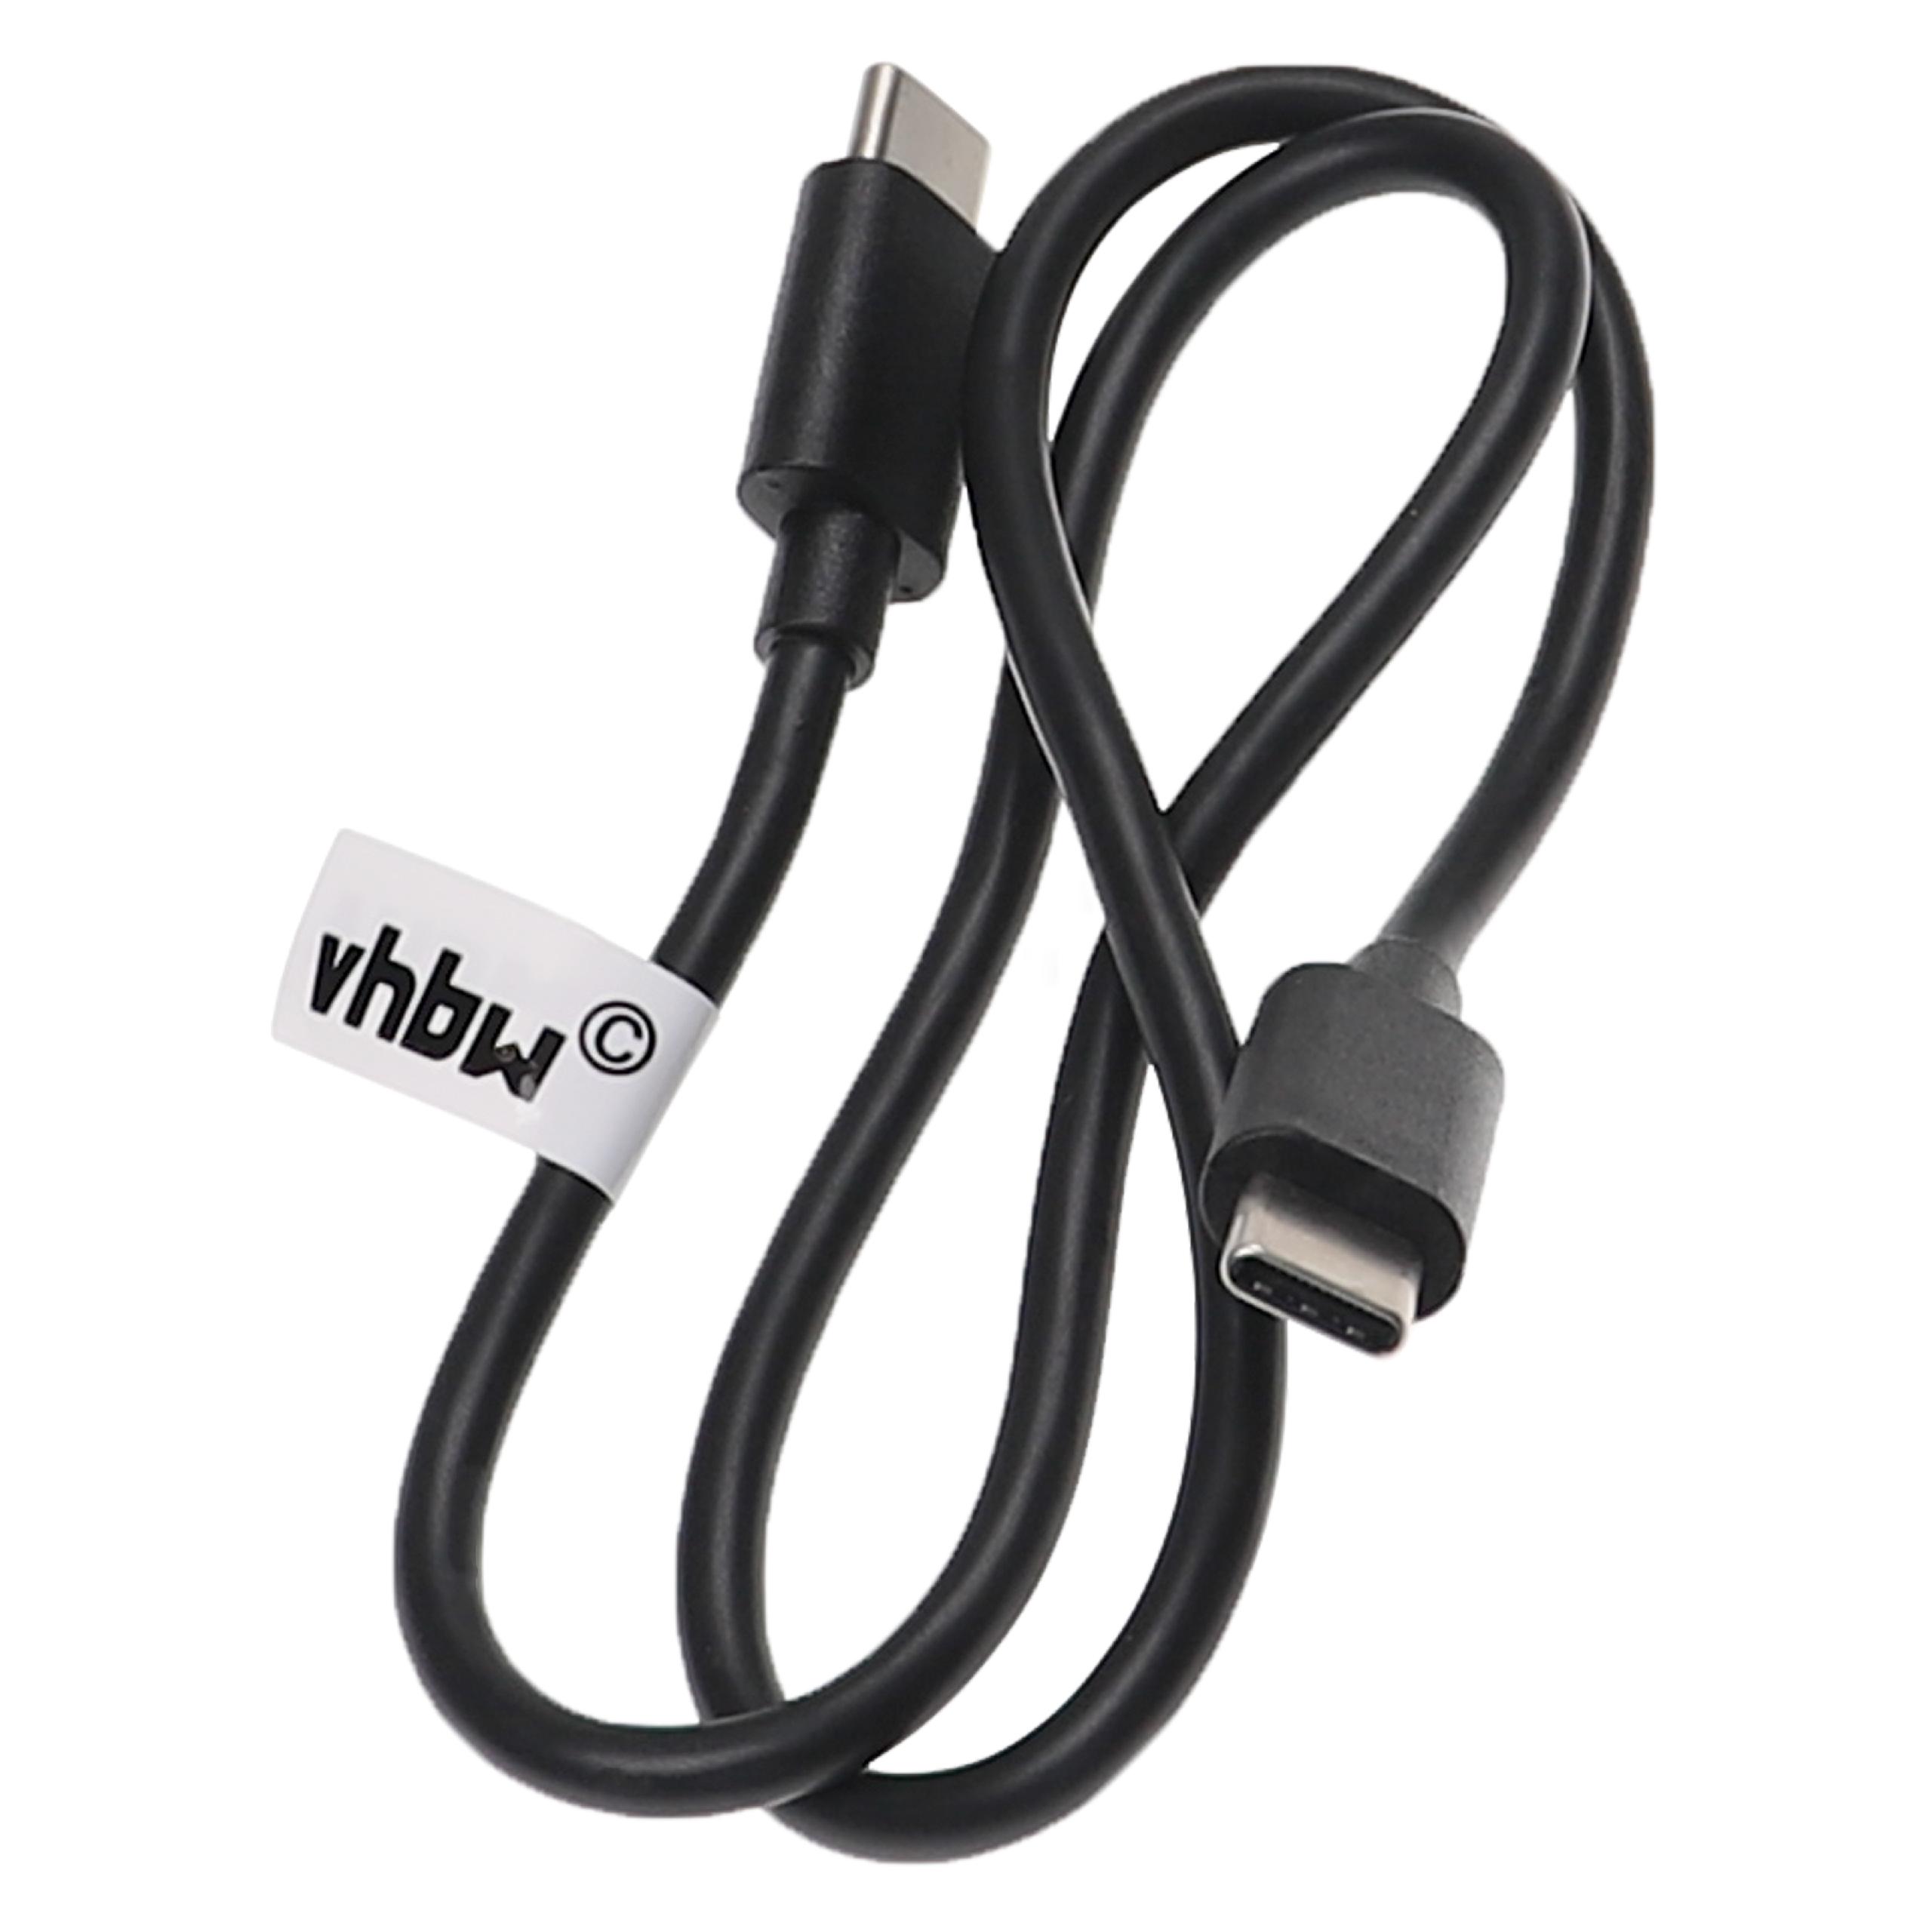 Cable de carga USB rápido para diversos portátiles, tablets, smartphones - 50 cm, negro